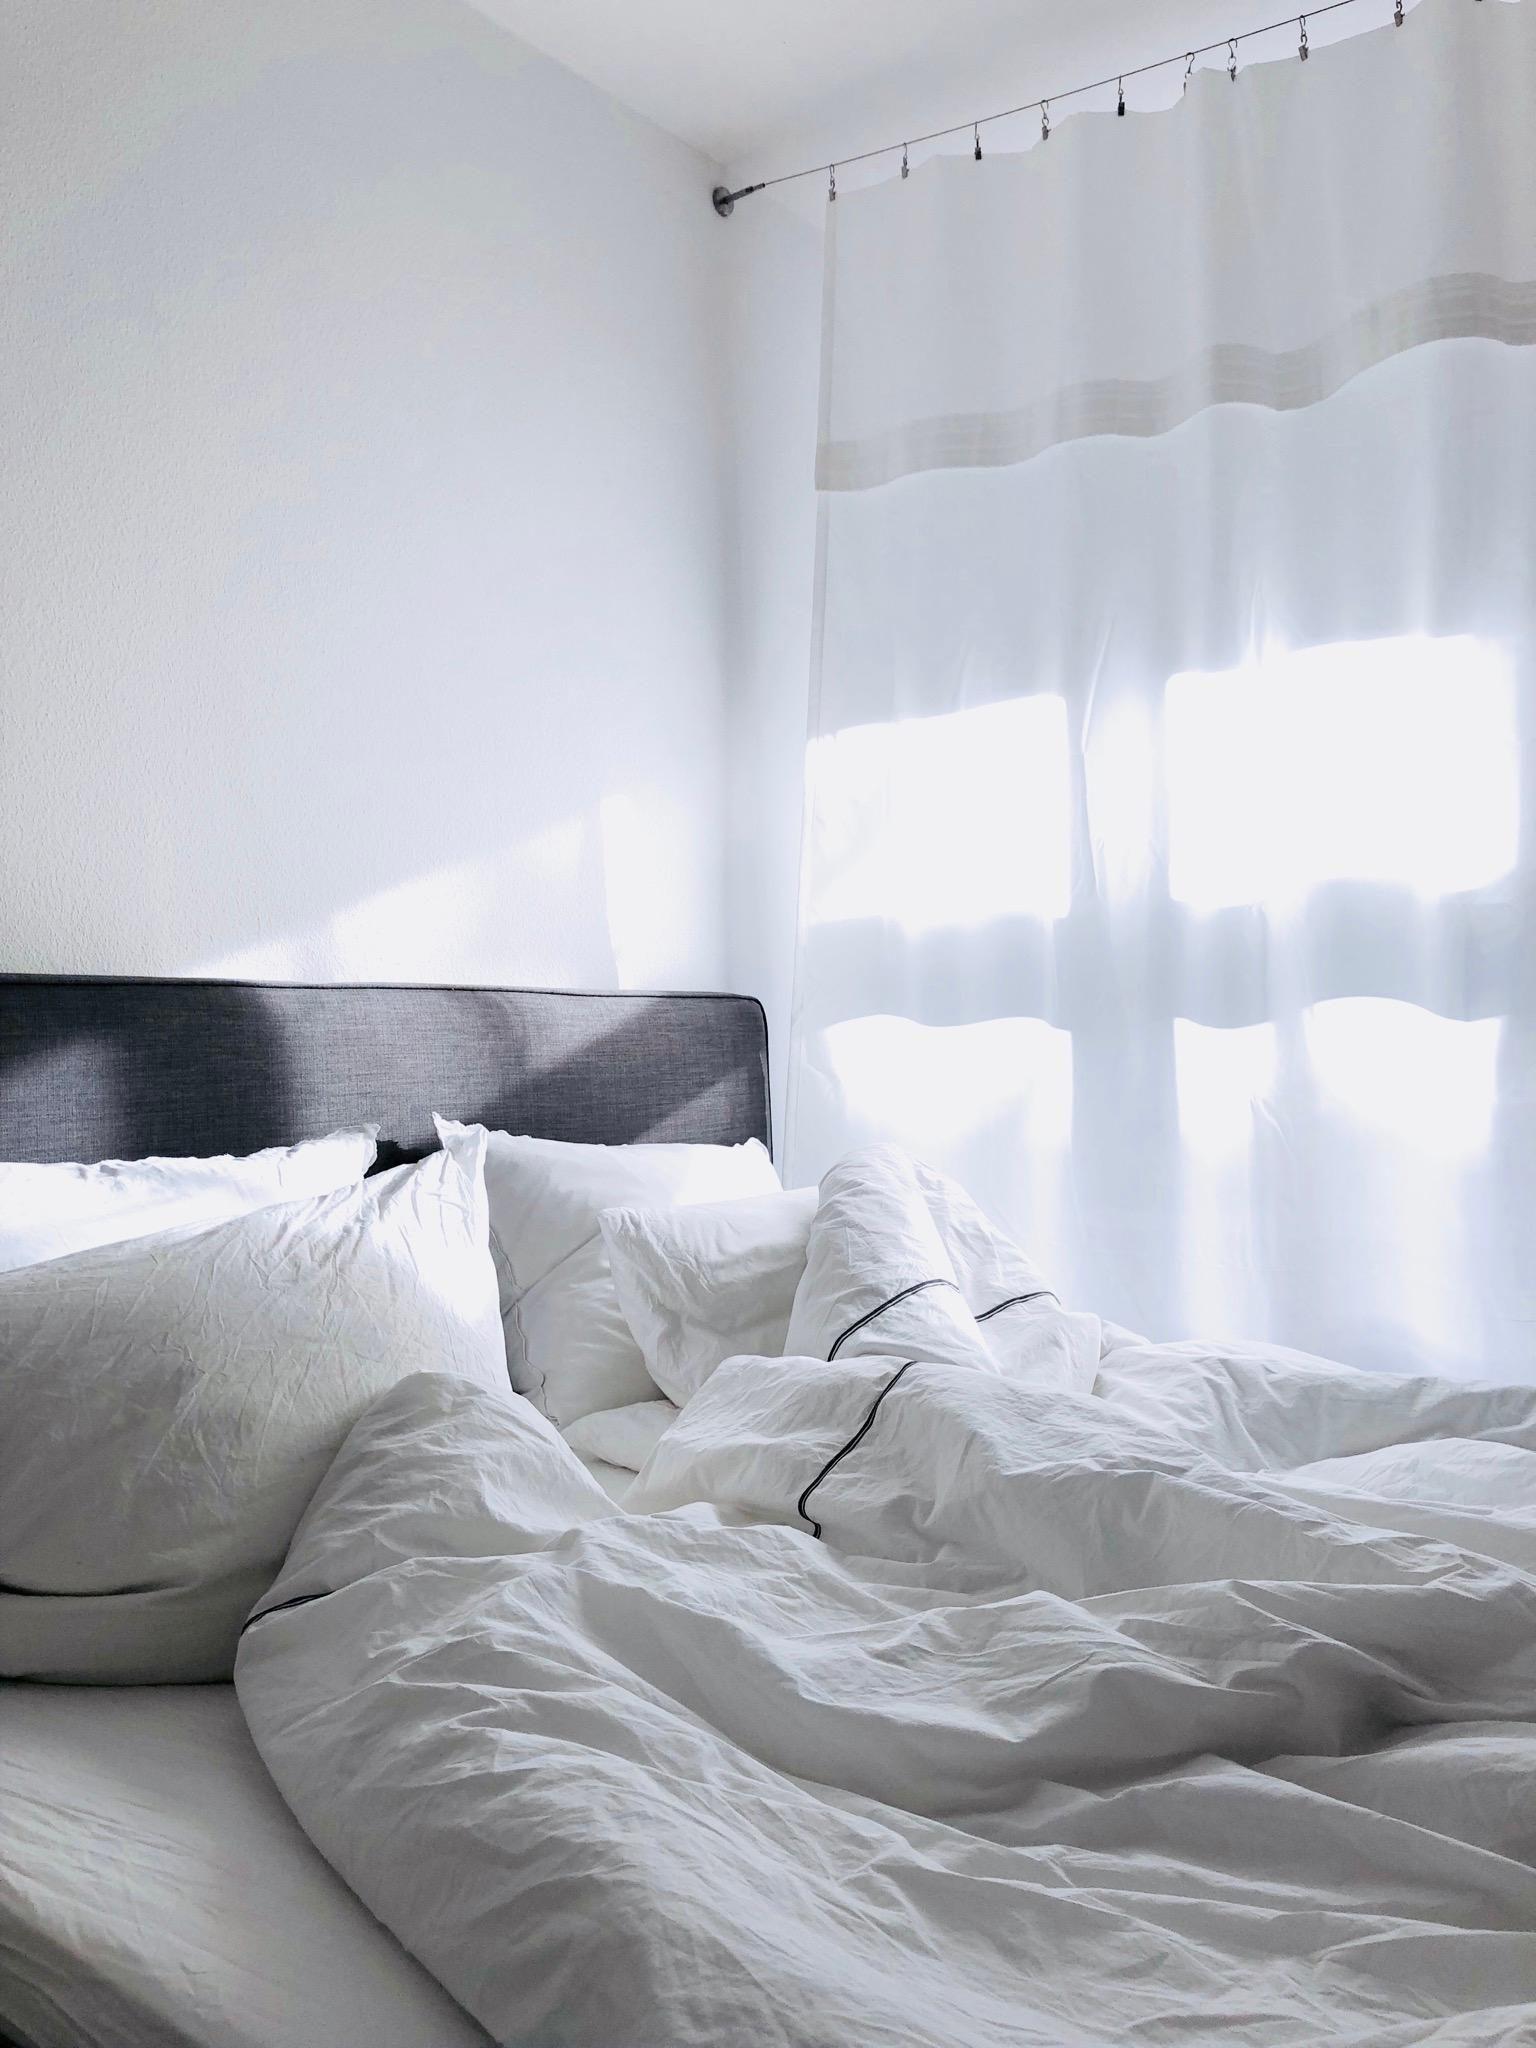 Sonnenbesuch! #hygge #bedroom #whiteliving #scandinavianstyle #interior #greylover #homeinspiration #sunlight #ikea  